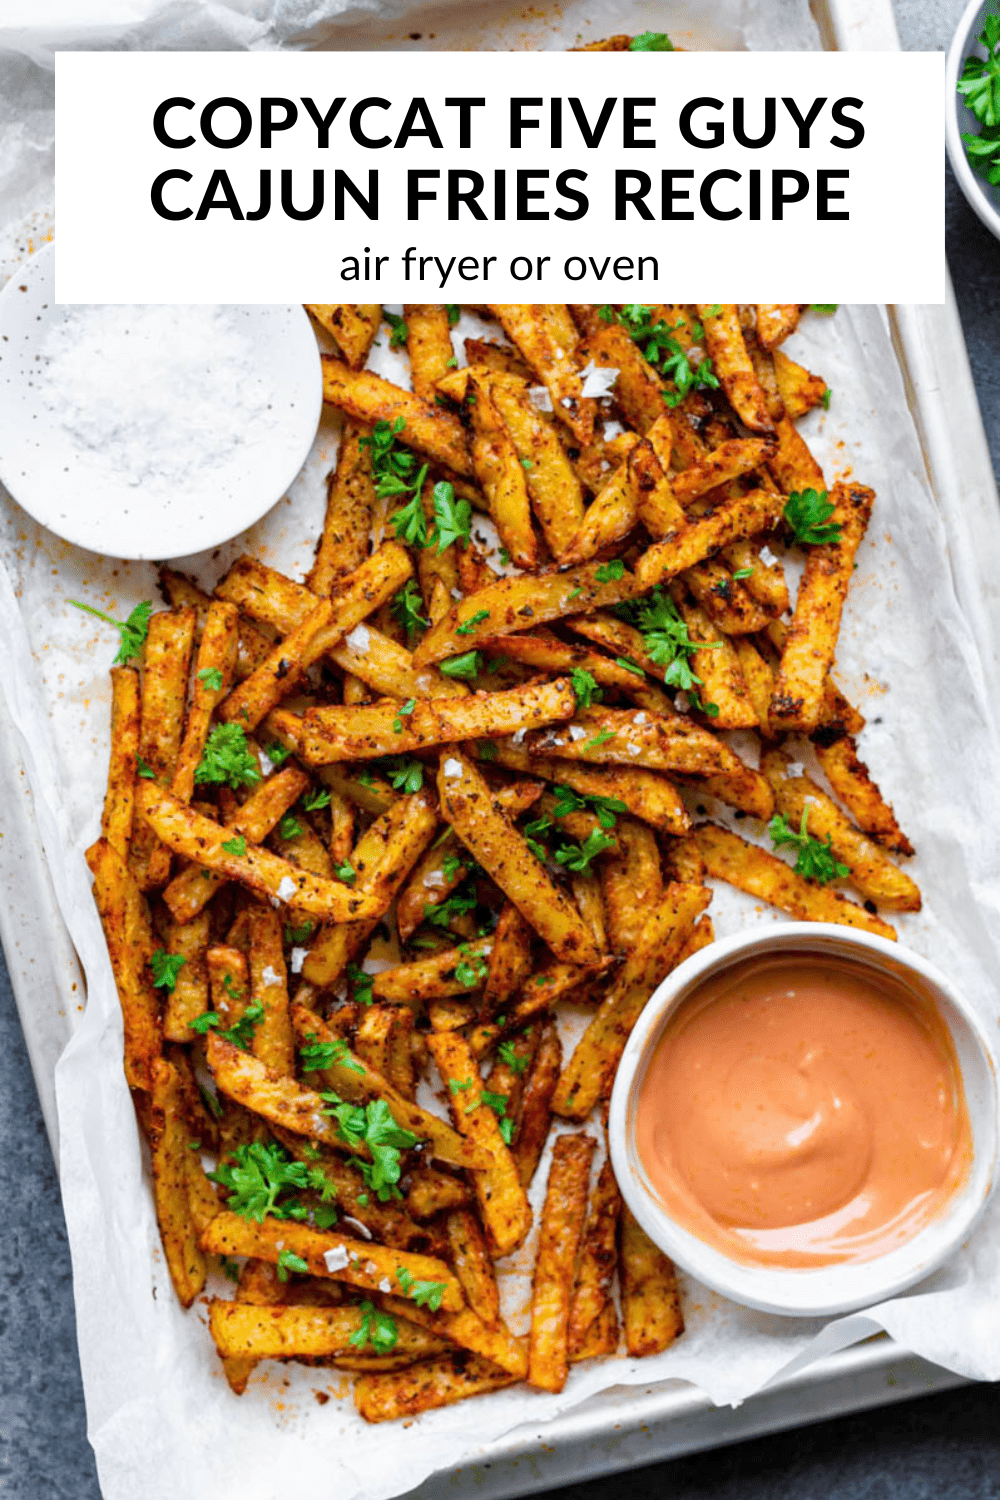 A photo of cajun fries with text overlay "Copycat five guys cajun fries recipe".